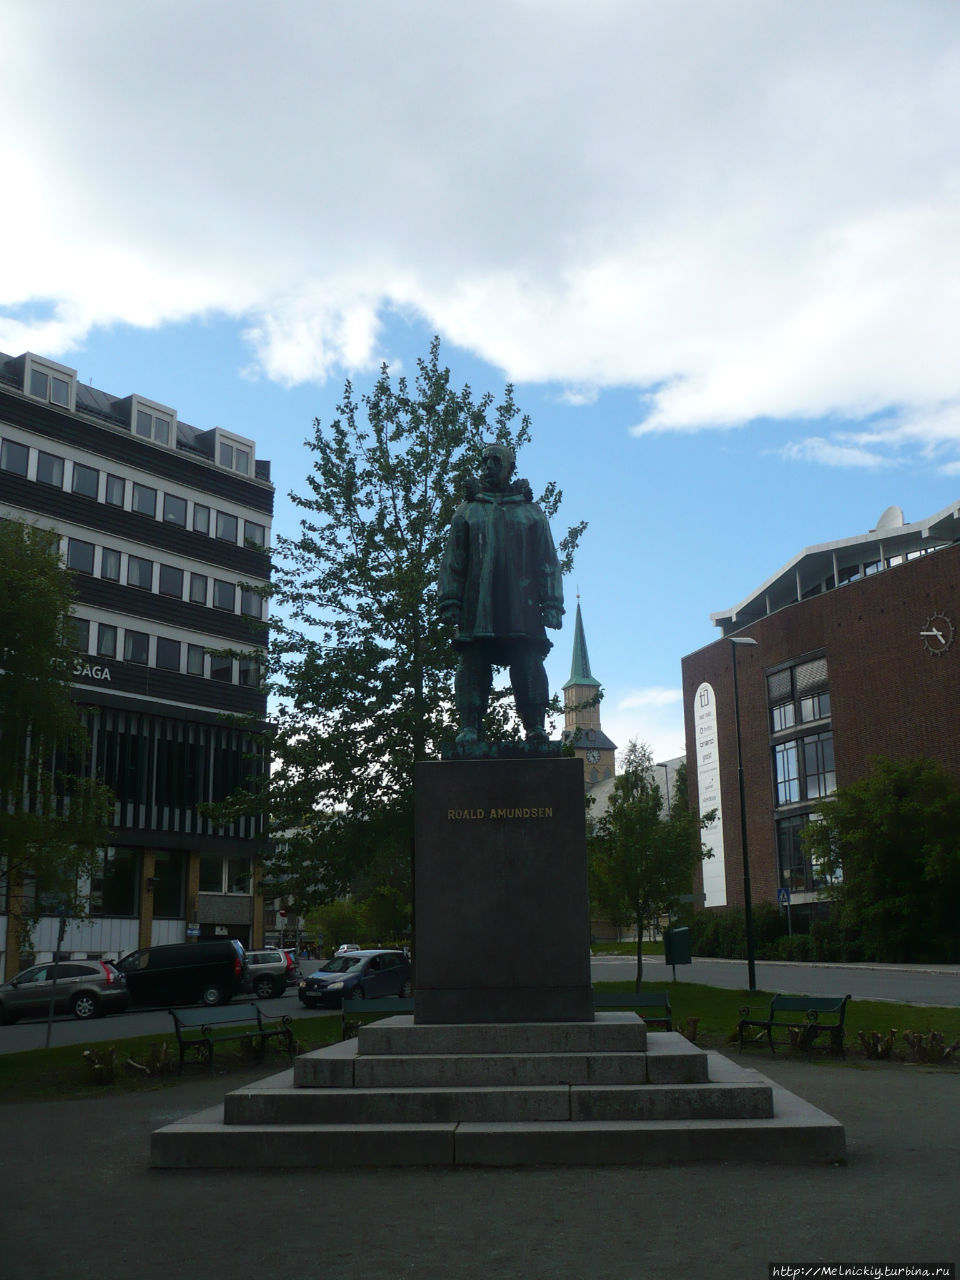 Памятник Руалю Амундсену / A Monument To Roald Amundsen